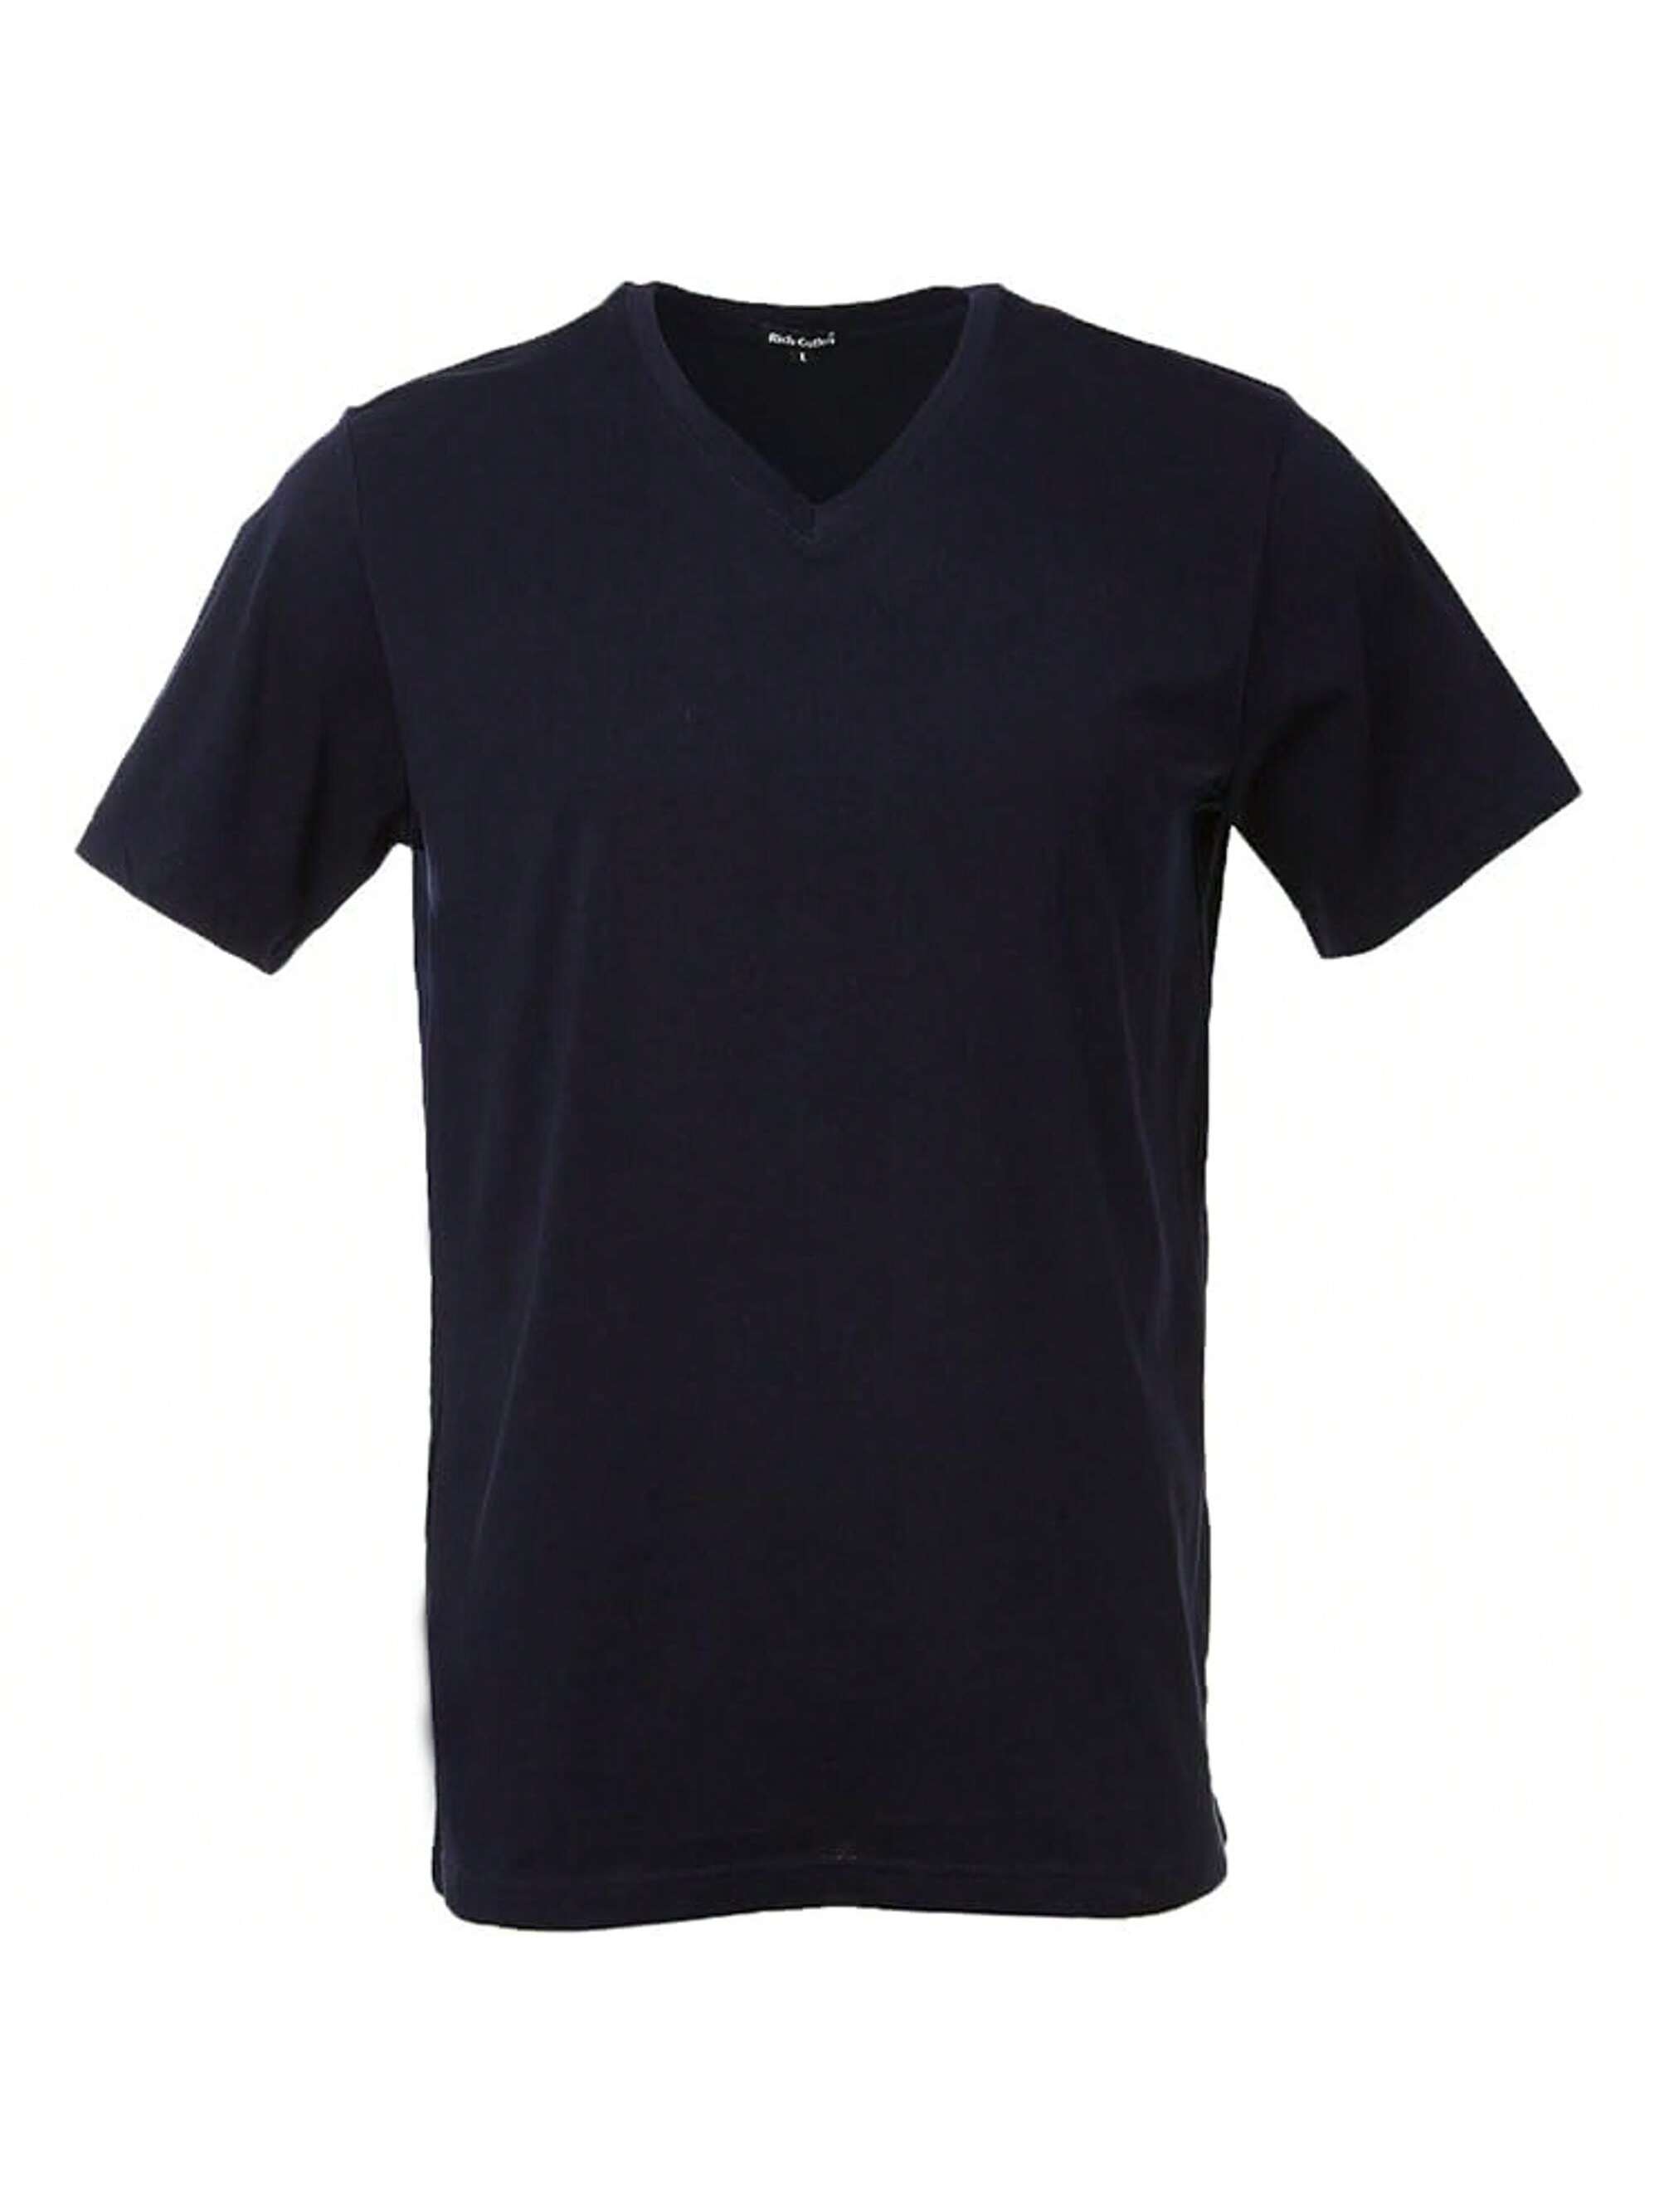 Мужская хлопковая футболка премиум-класса с v-образным вырезом Rich Cotton BLK-M, военно-морской